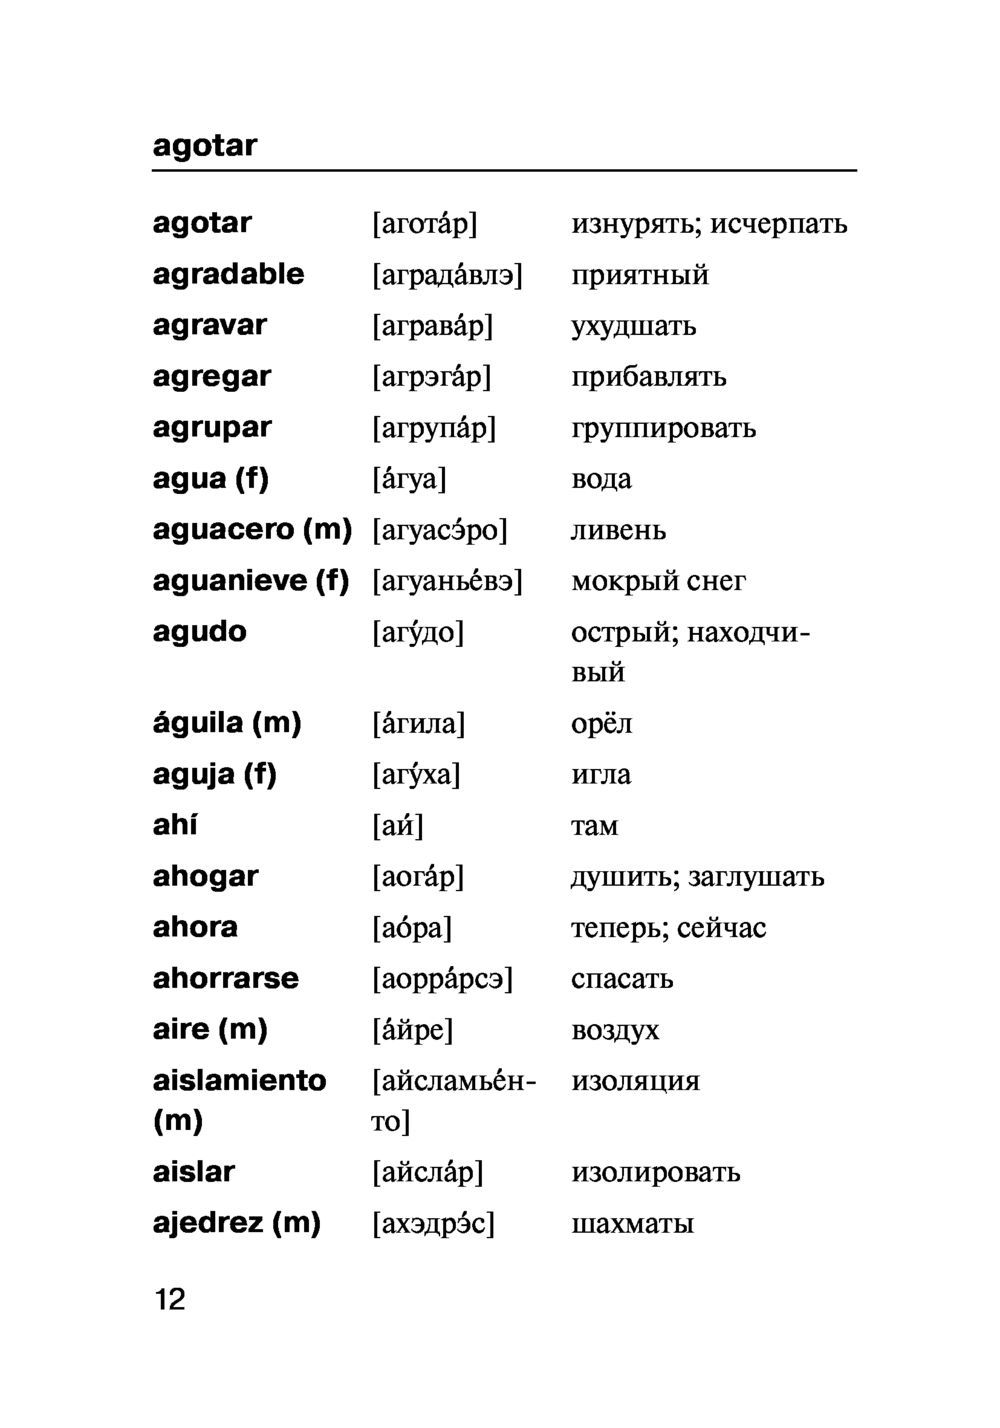 Фразы на испанском языке